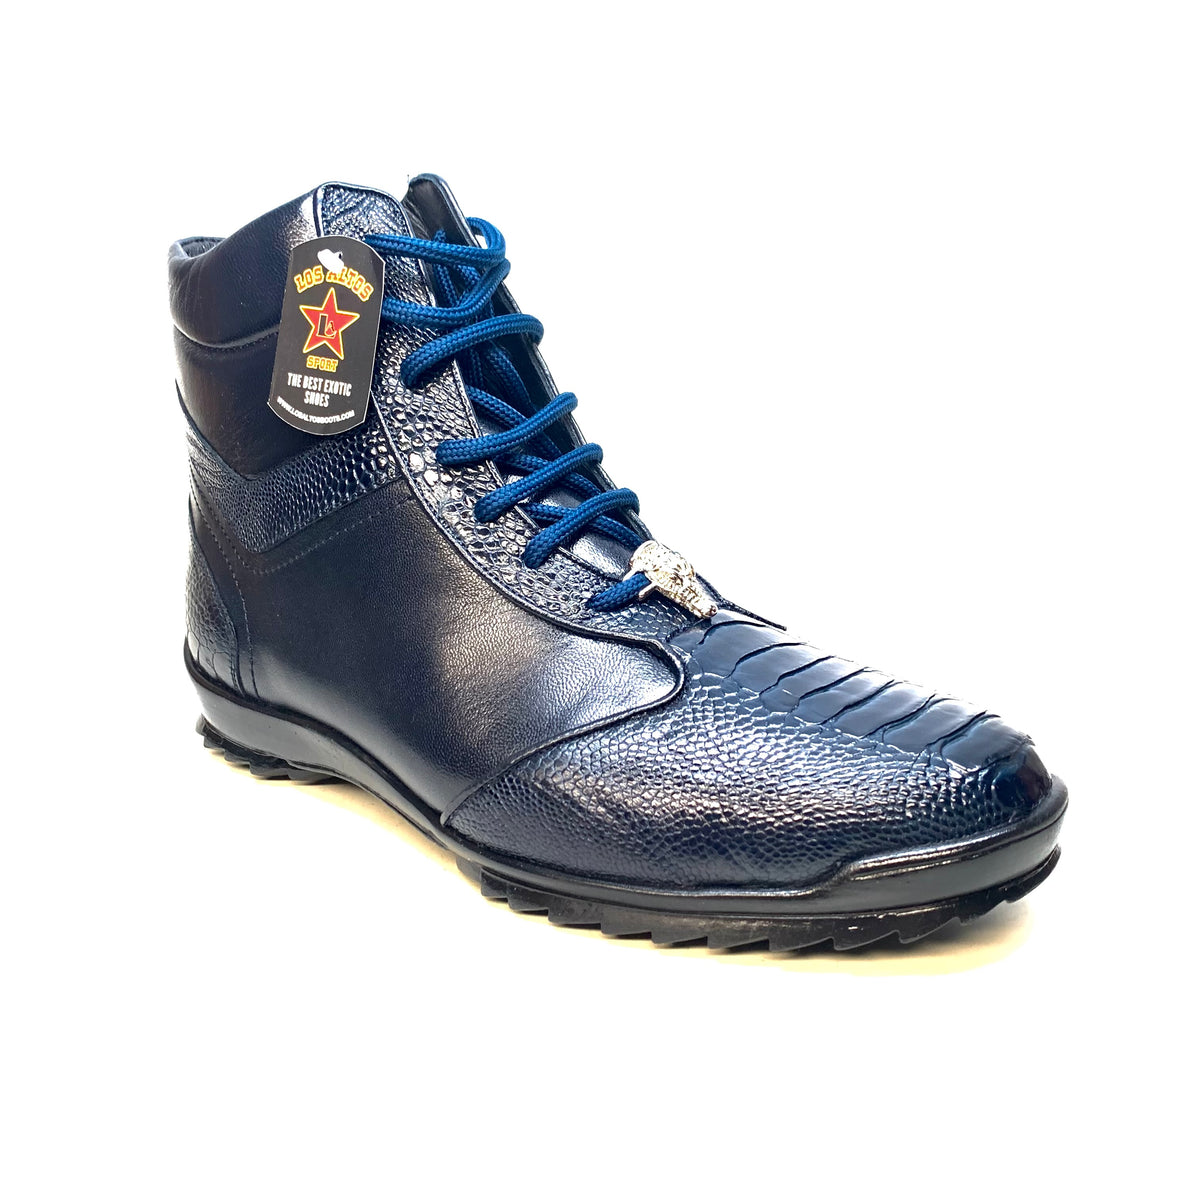 Los Altos Navy Blue Ostrich Leg High-top Sneakers - Dudes Boutique